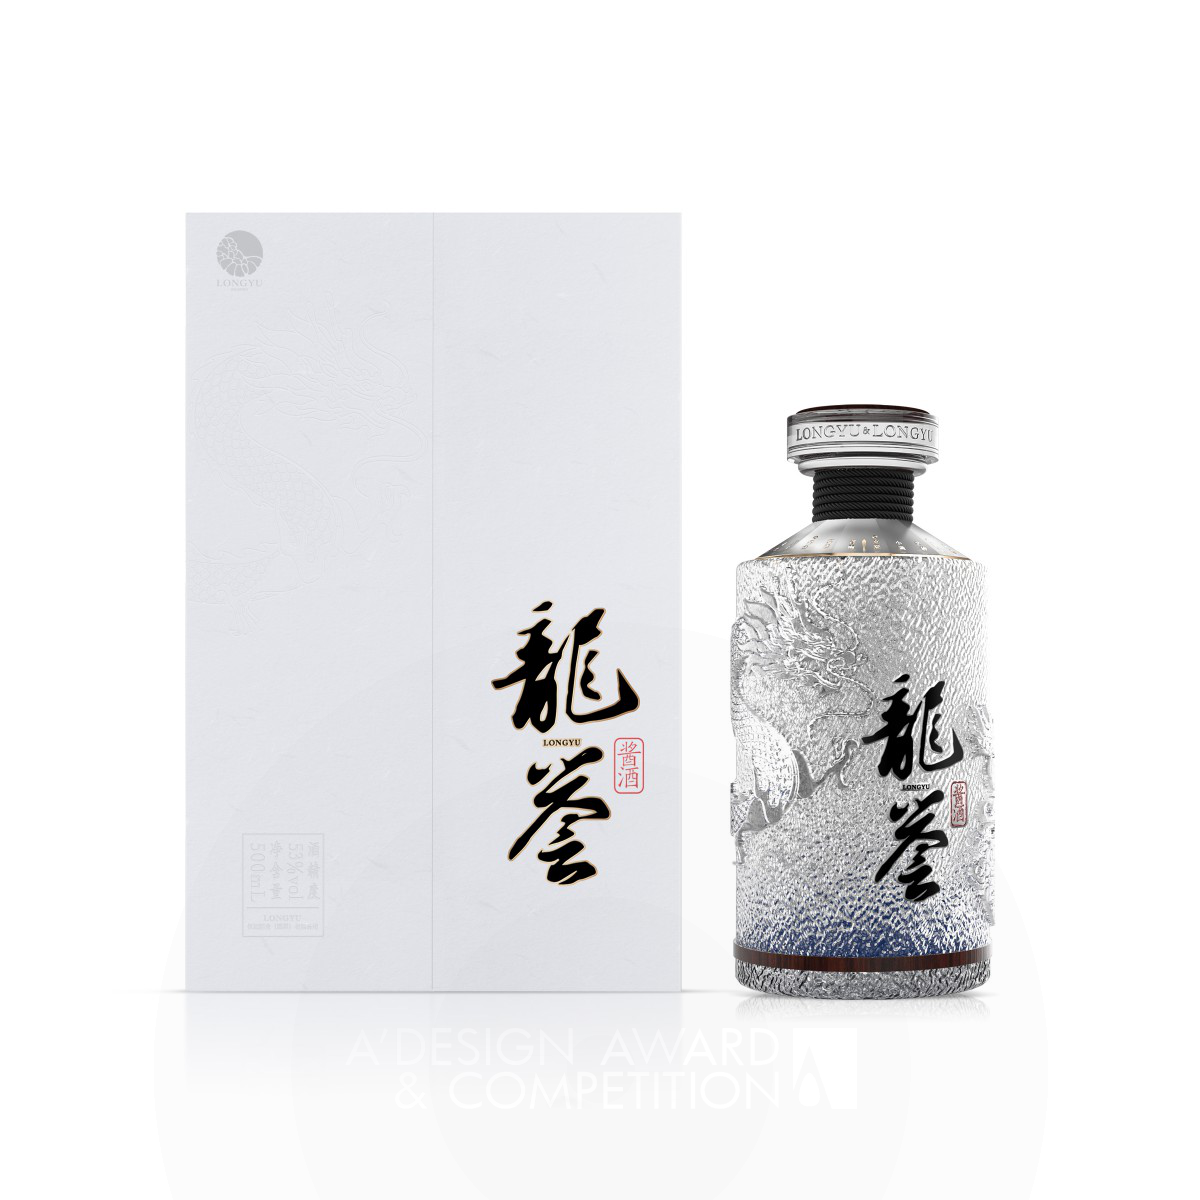 Longyu Sauce Wine Packaging by Wang Lina